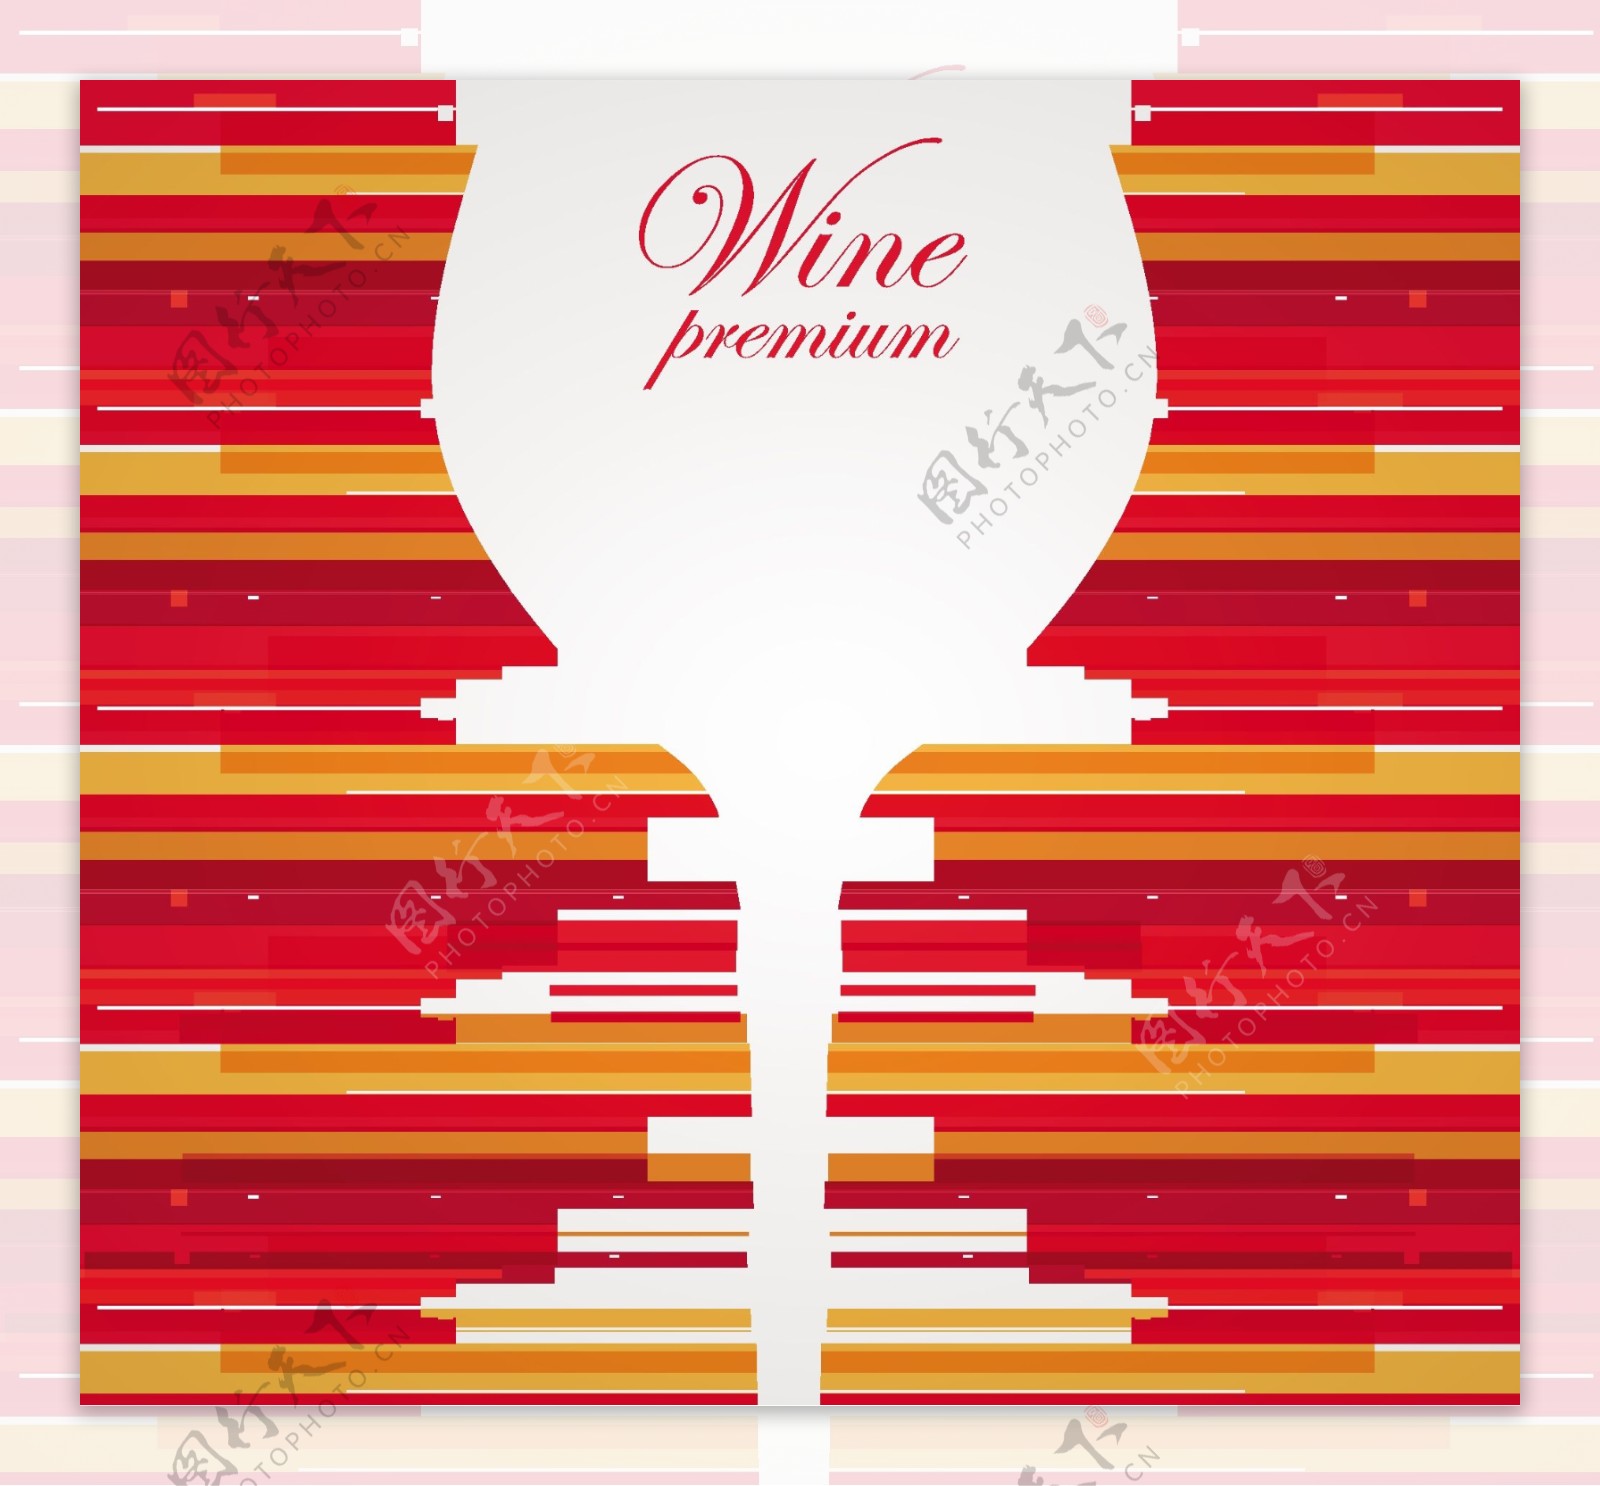 葡萄酒菜单图片